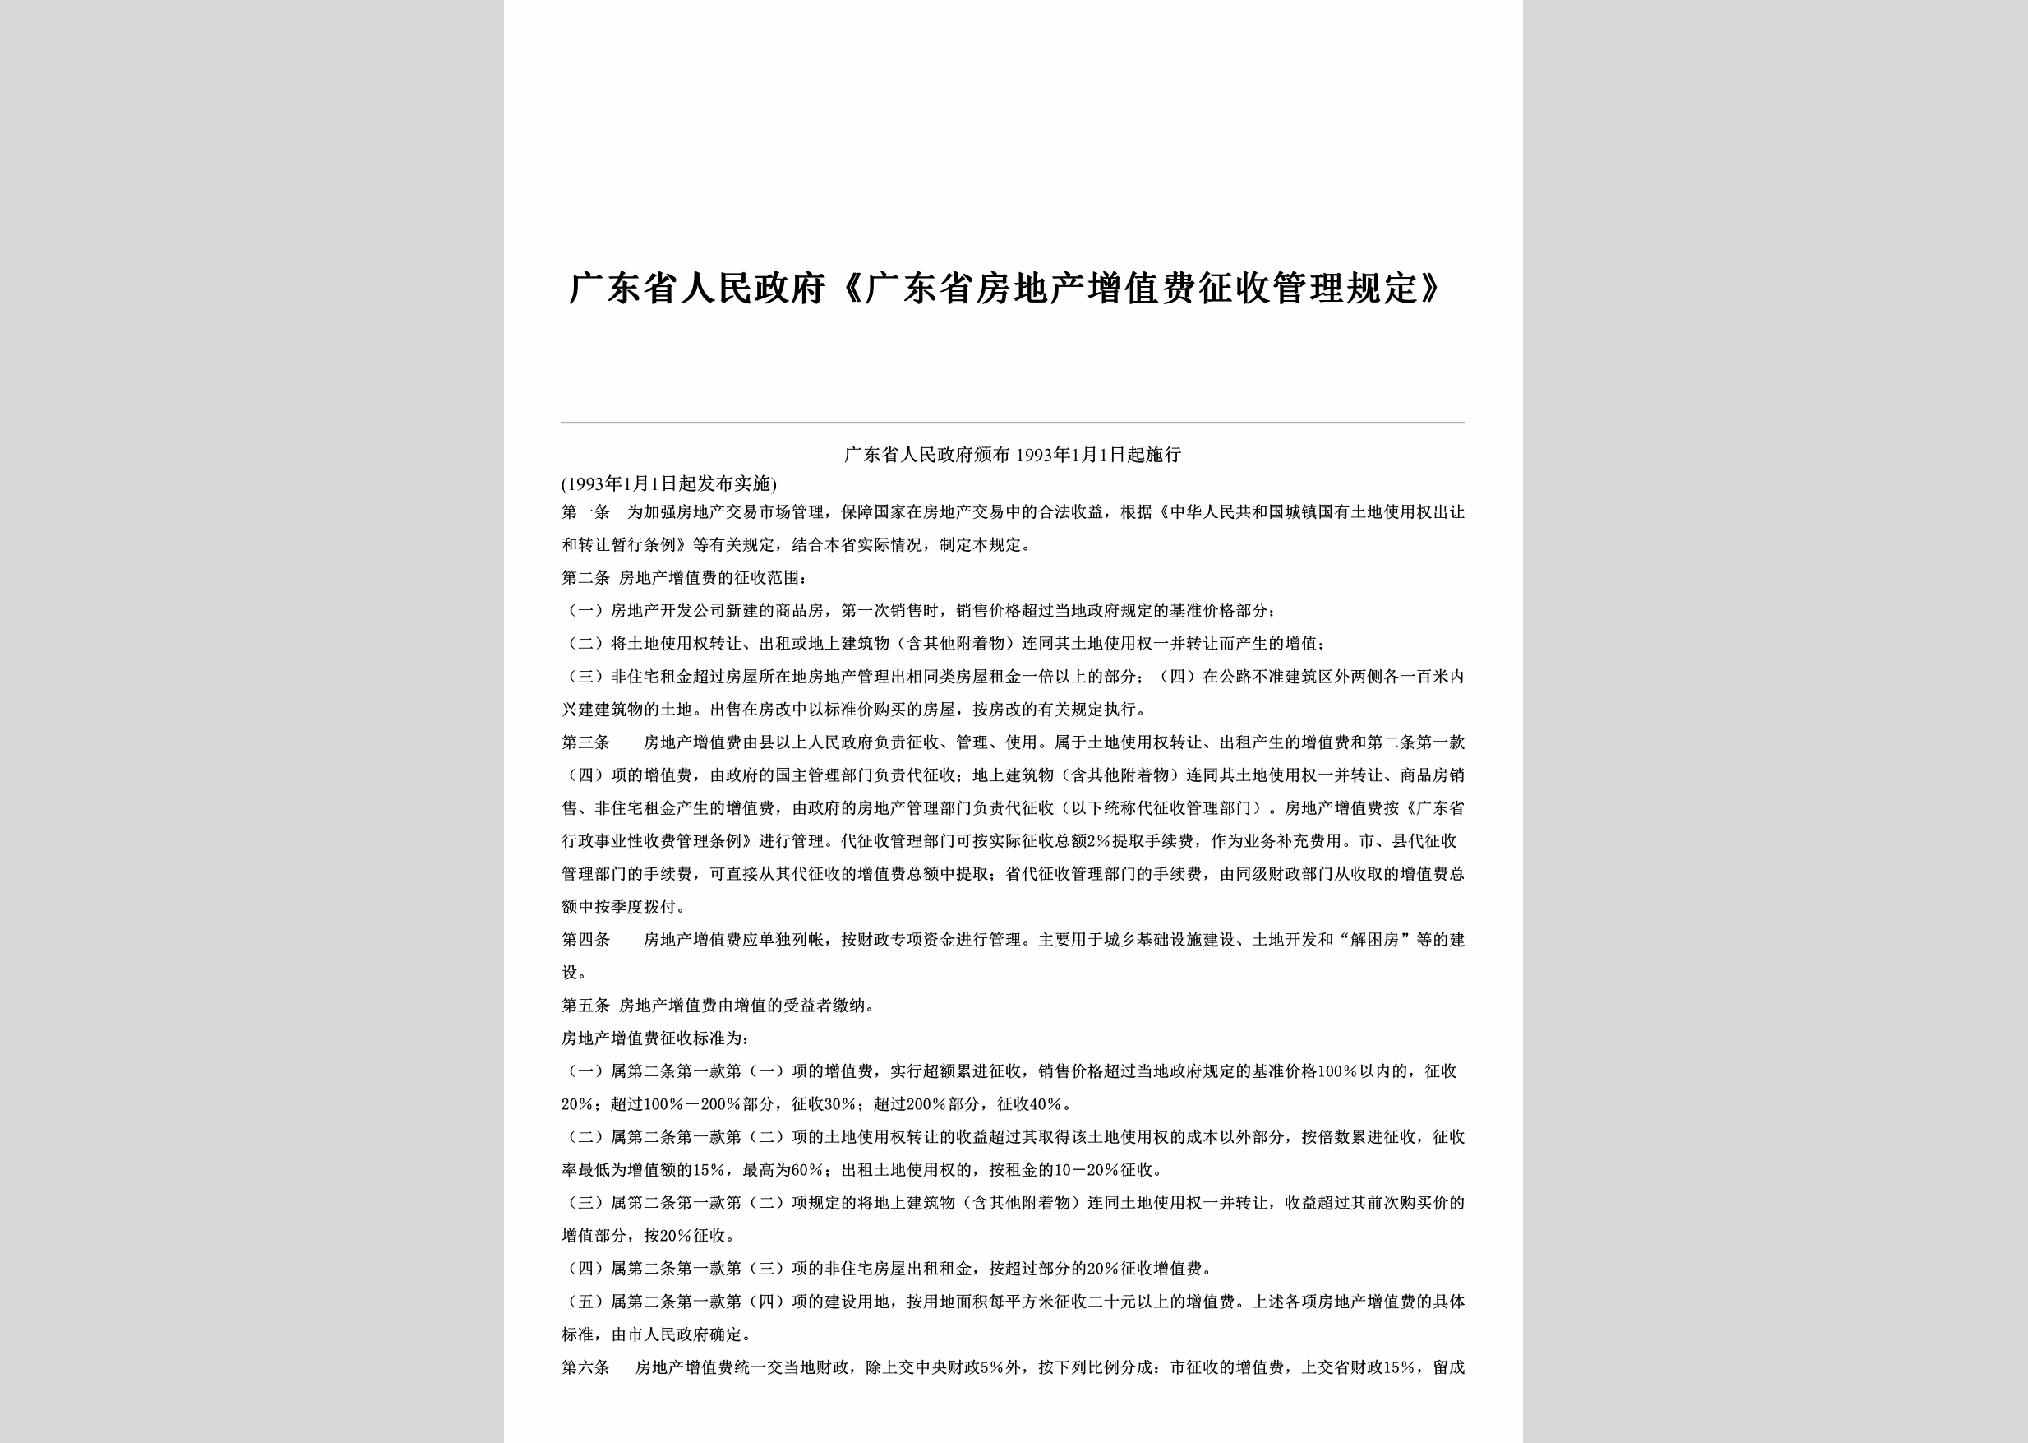 GD-FCZFGLFD-1993：《广东省房地产增值费征收管理规定》